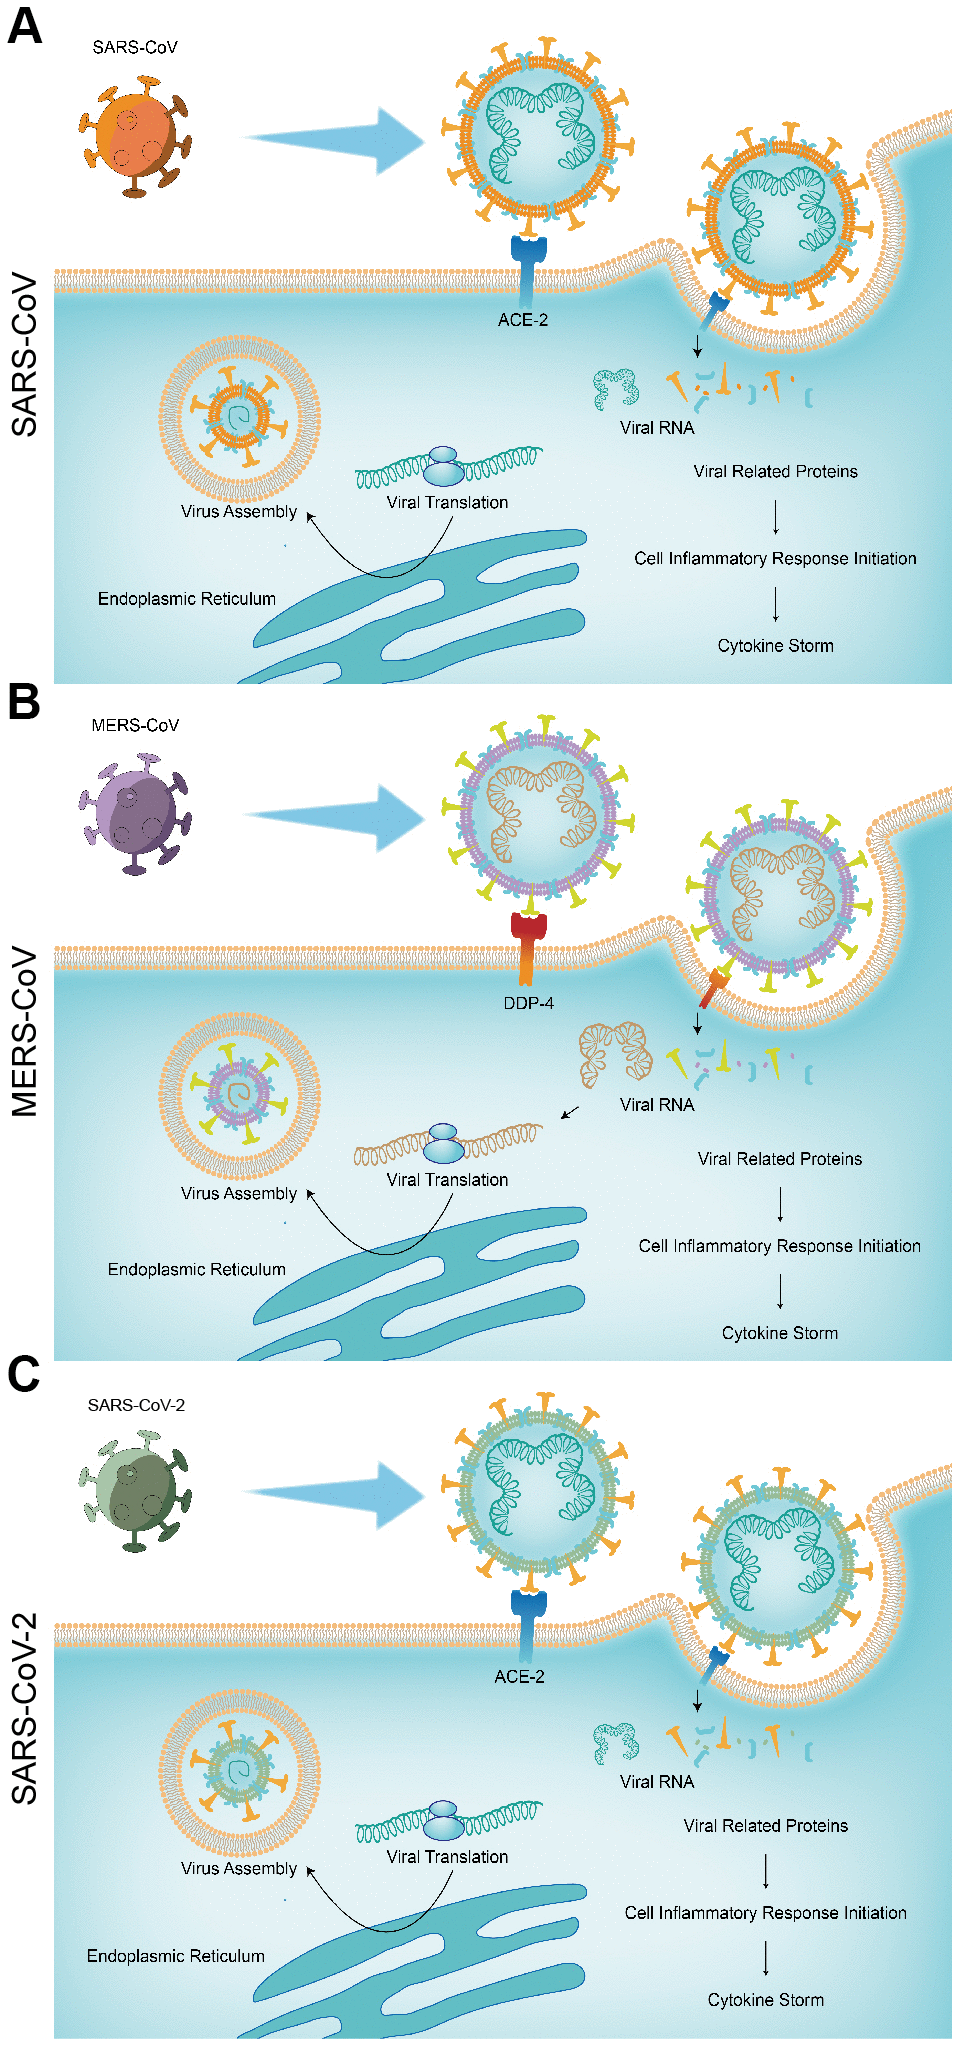 The pathogenic mechanisms of the three pneumonias. (A) SARS-CoV; (B) MERS-CoV; (C) SARS-CoV-2.